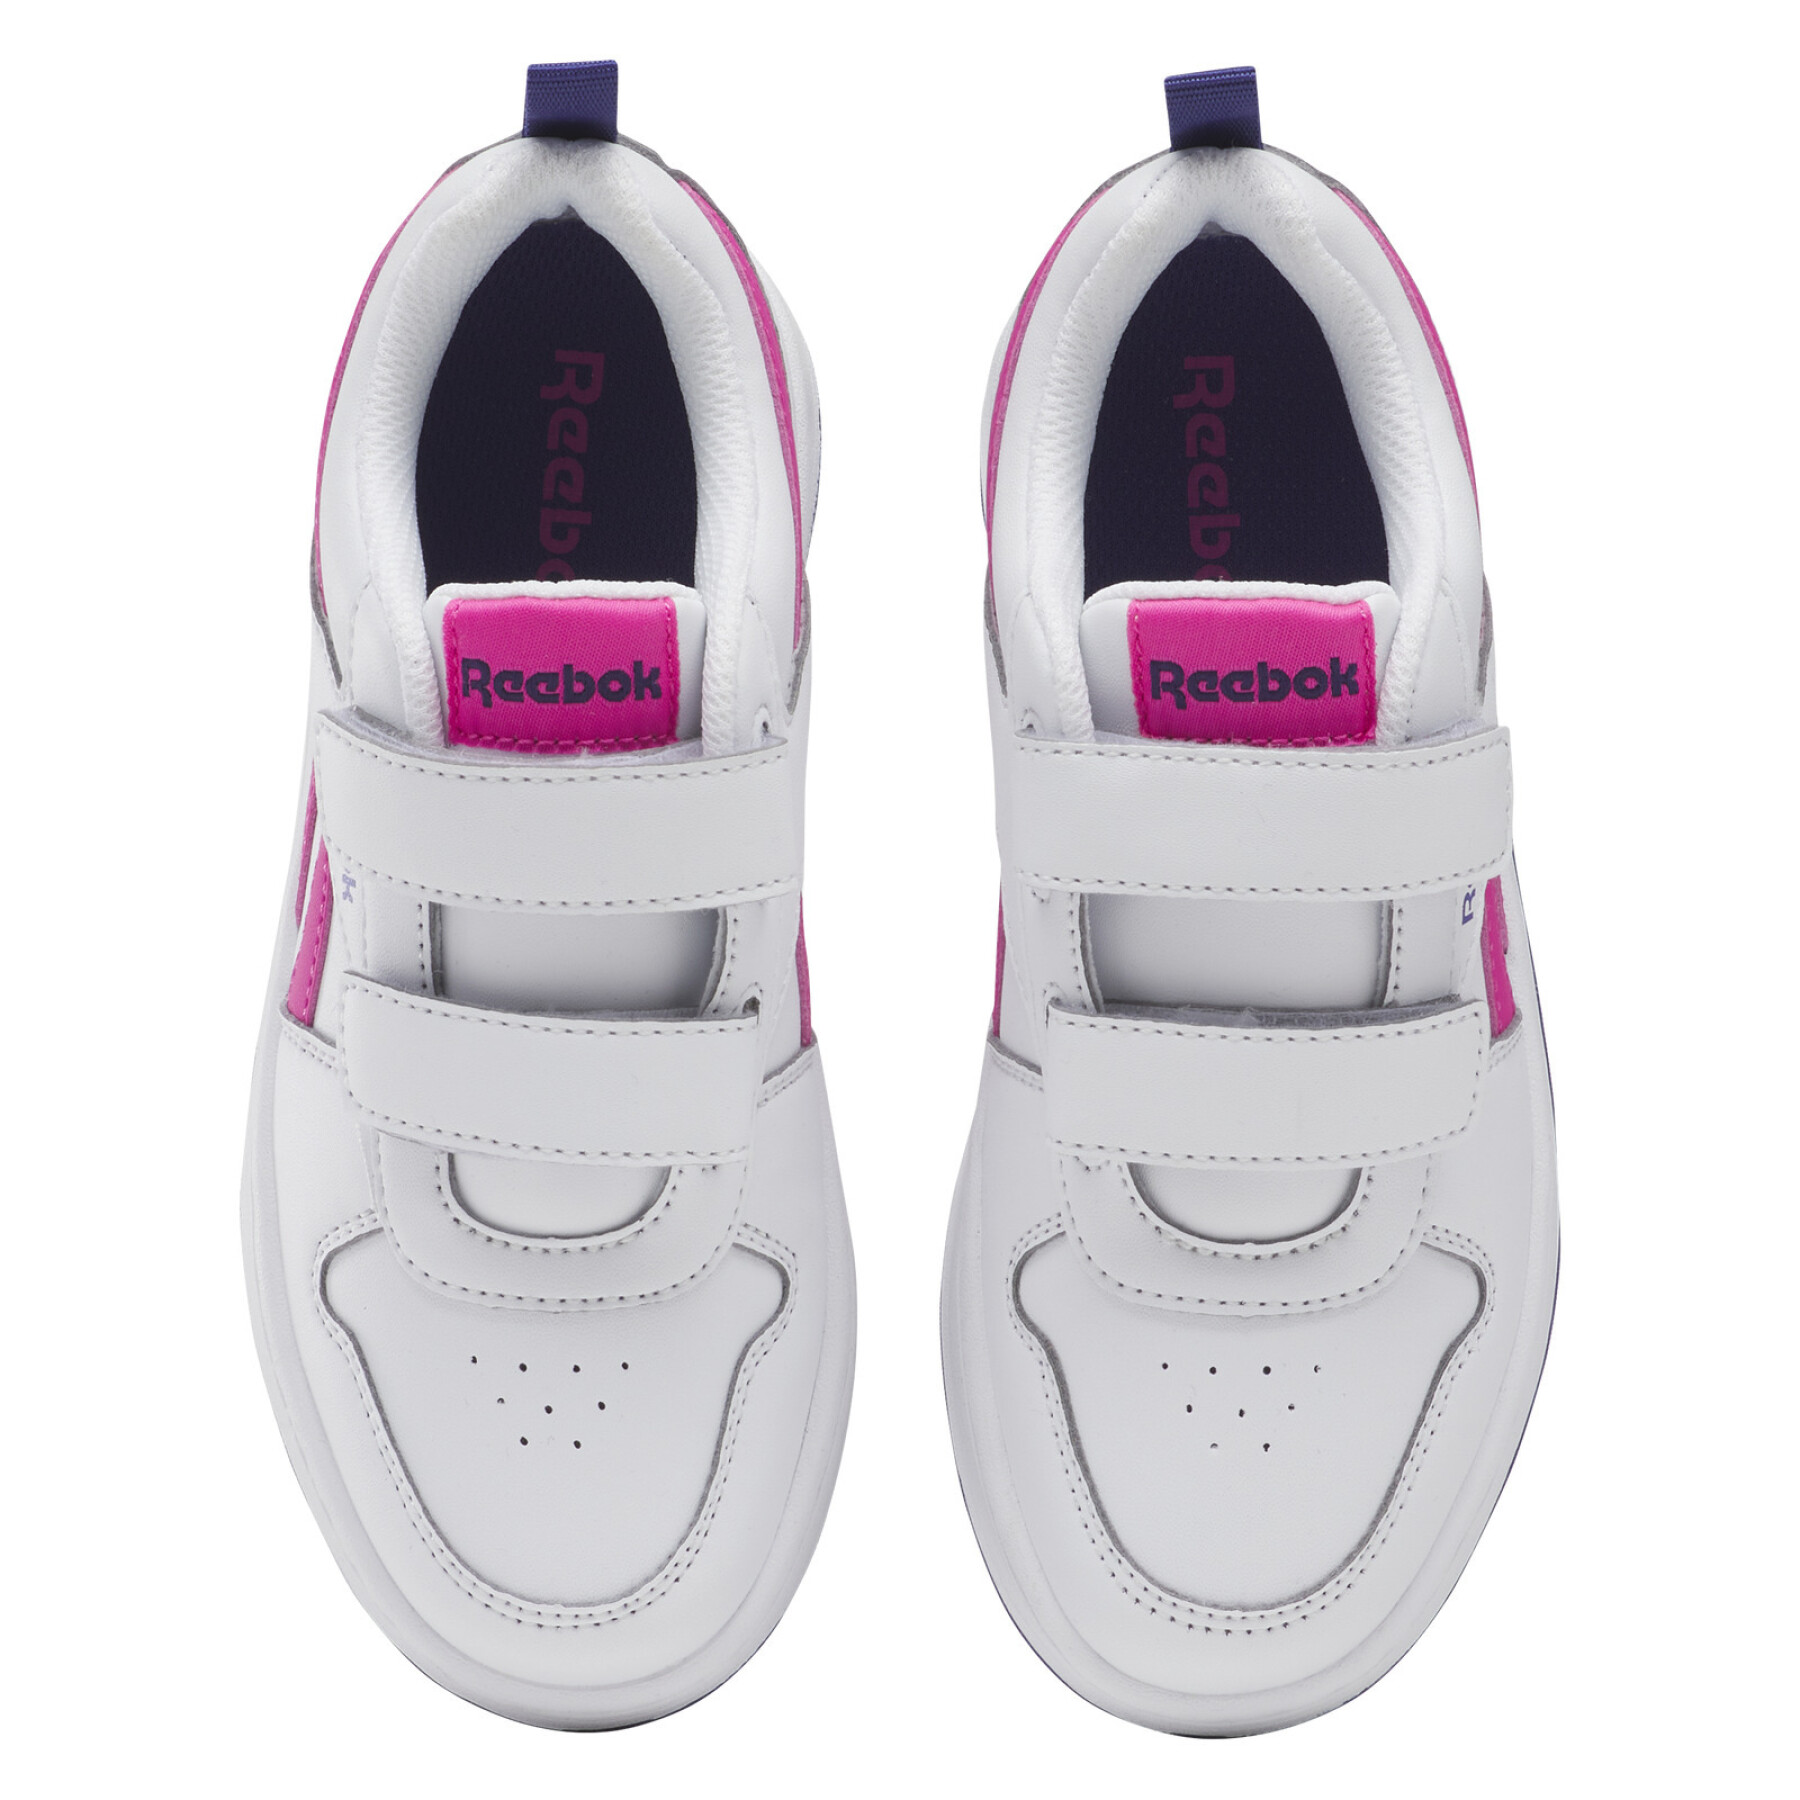 Children's sneakers Reebok Royal Prime 2.0 2V